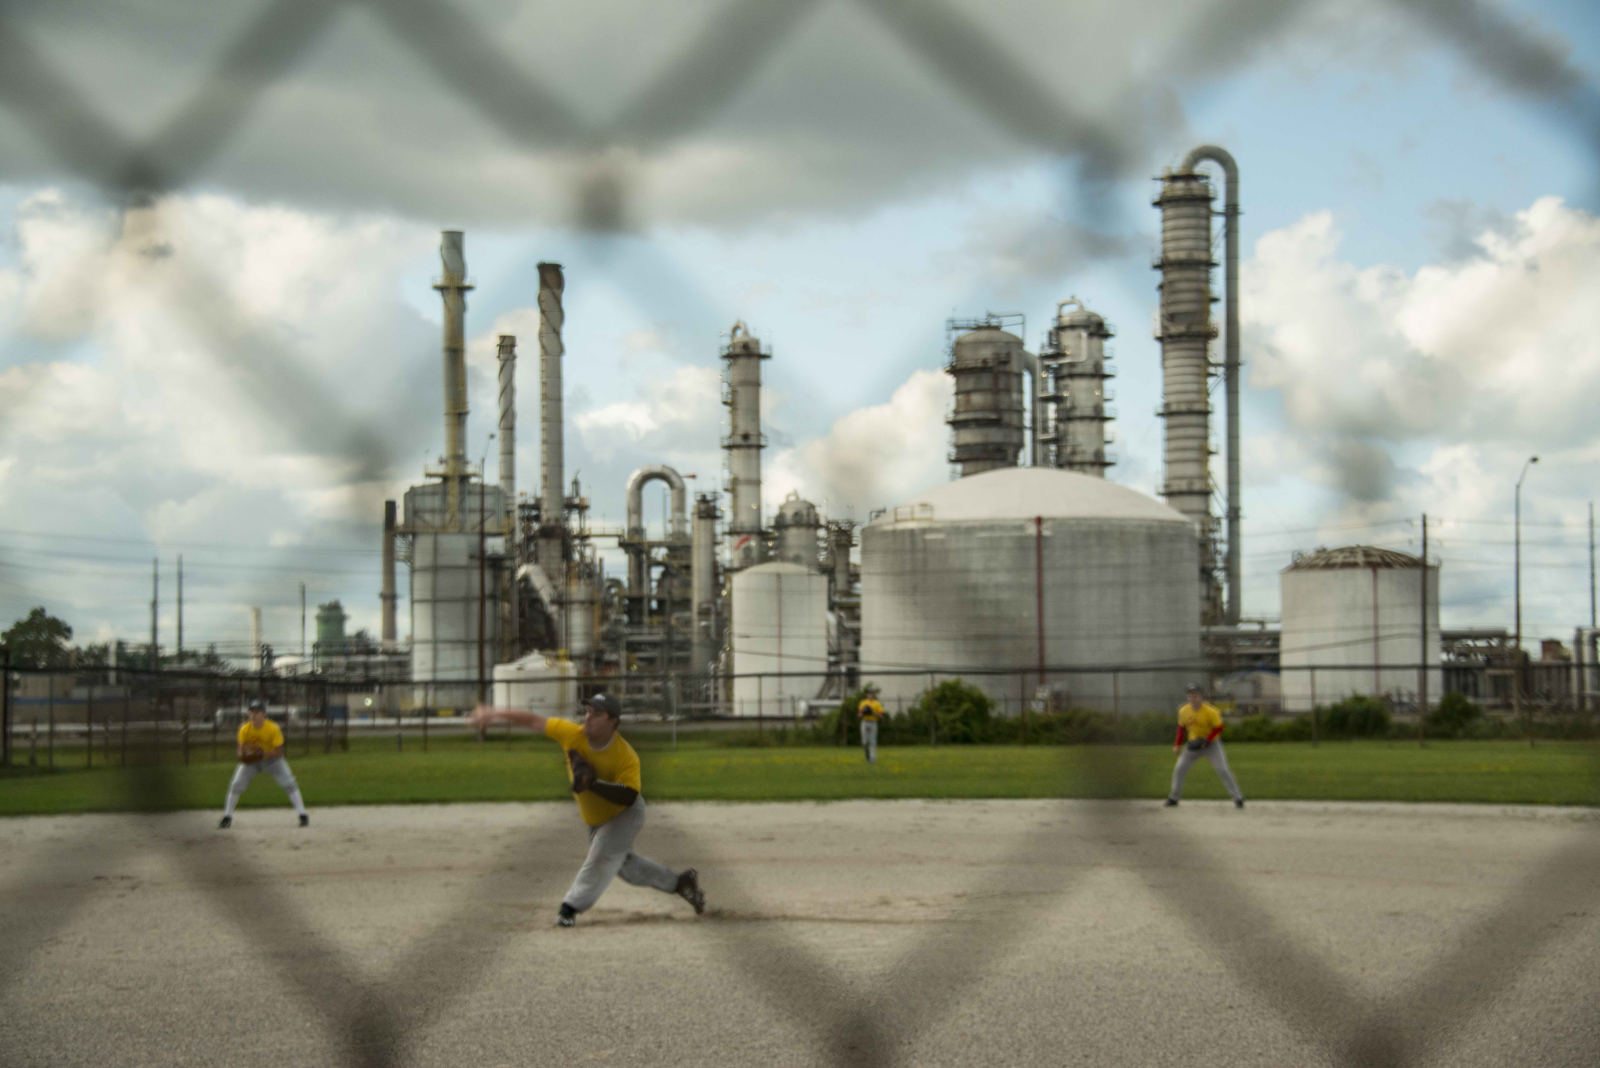 Sarnia, refinery, baseball, Global News, chemical plant